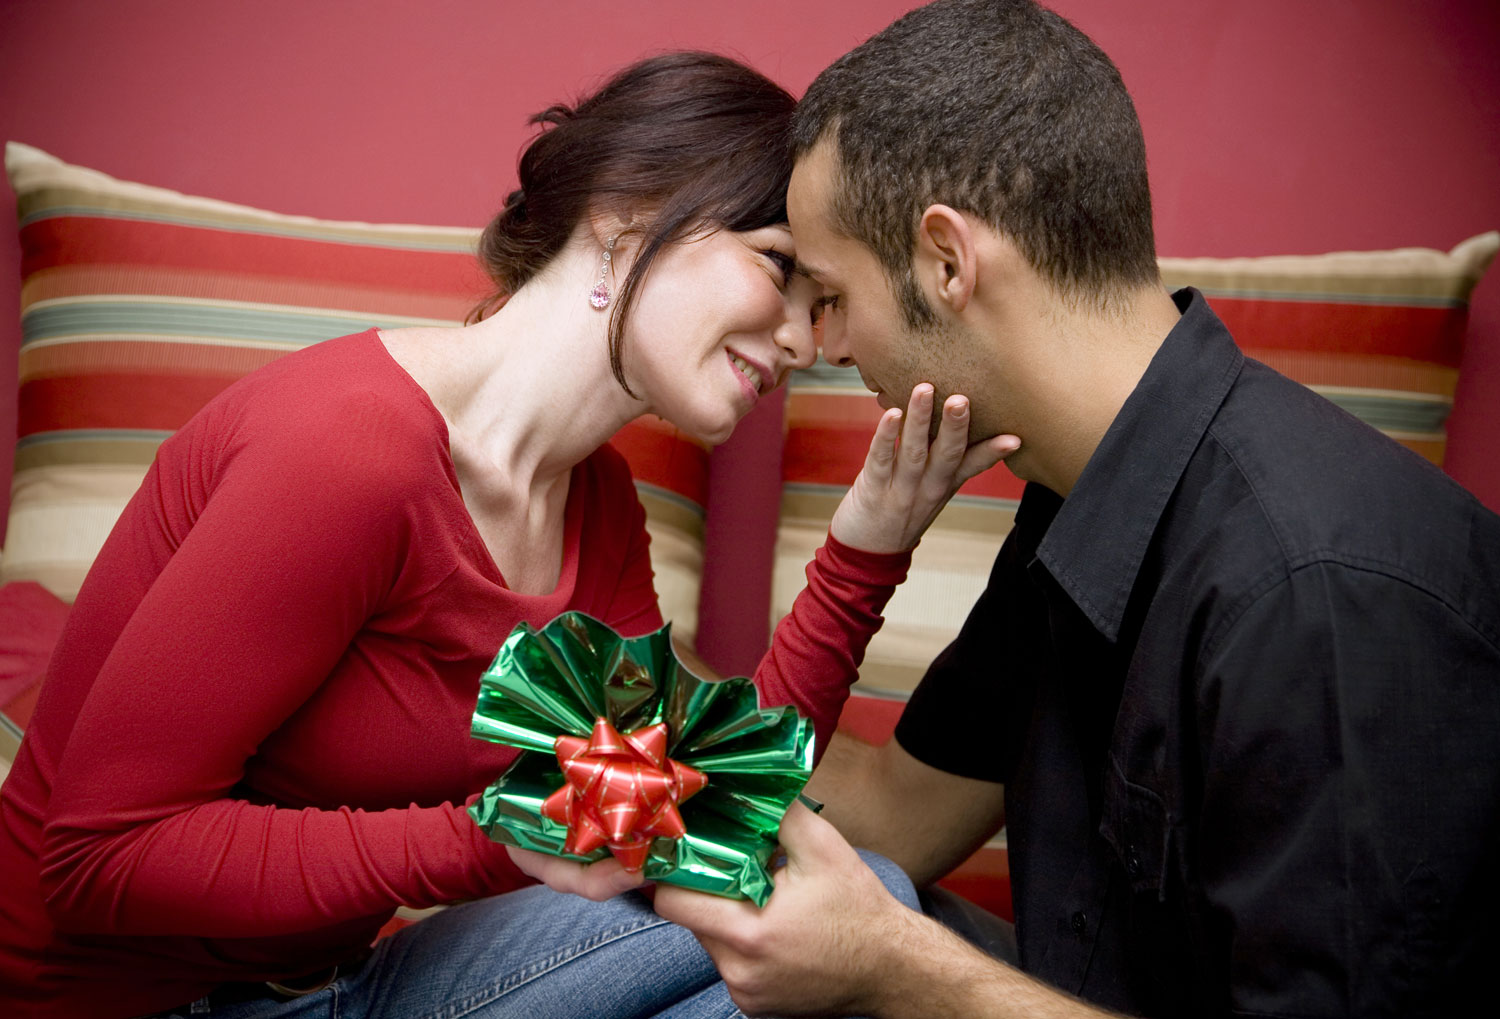 Что подарить паре на новый год, как удивить обоих?
что подарить паре на новый год, как удивить обоих?